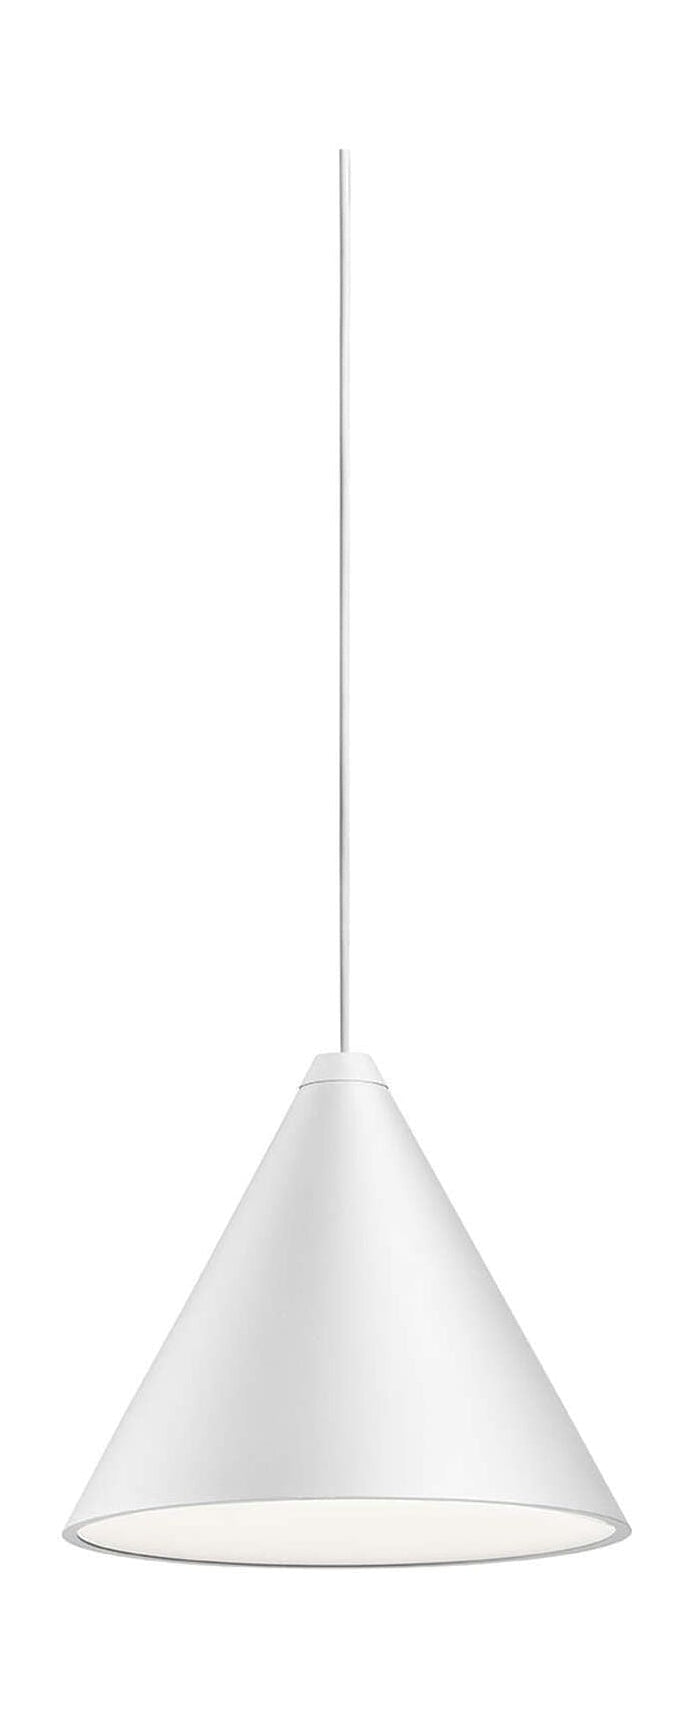 Lampa wisząca stożka strunowego FLOS 12 m, biała